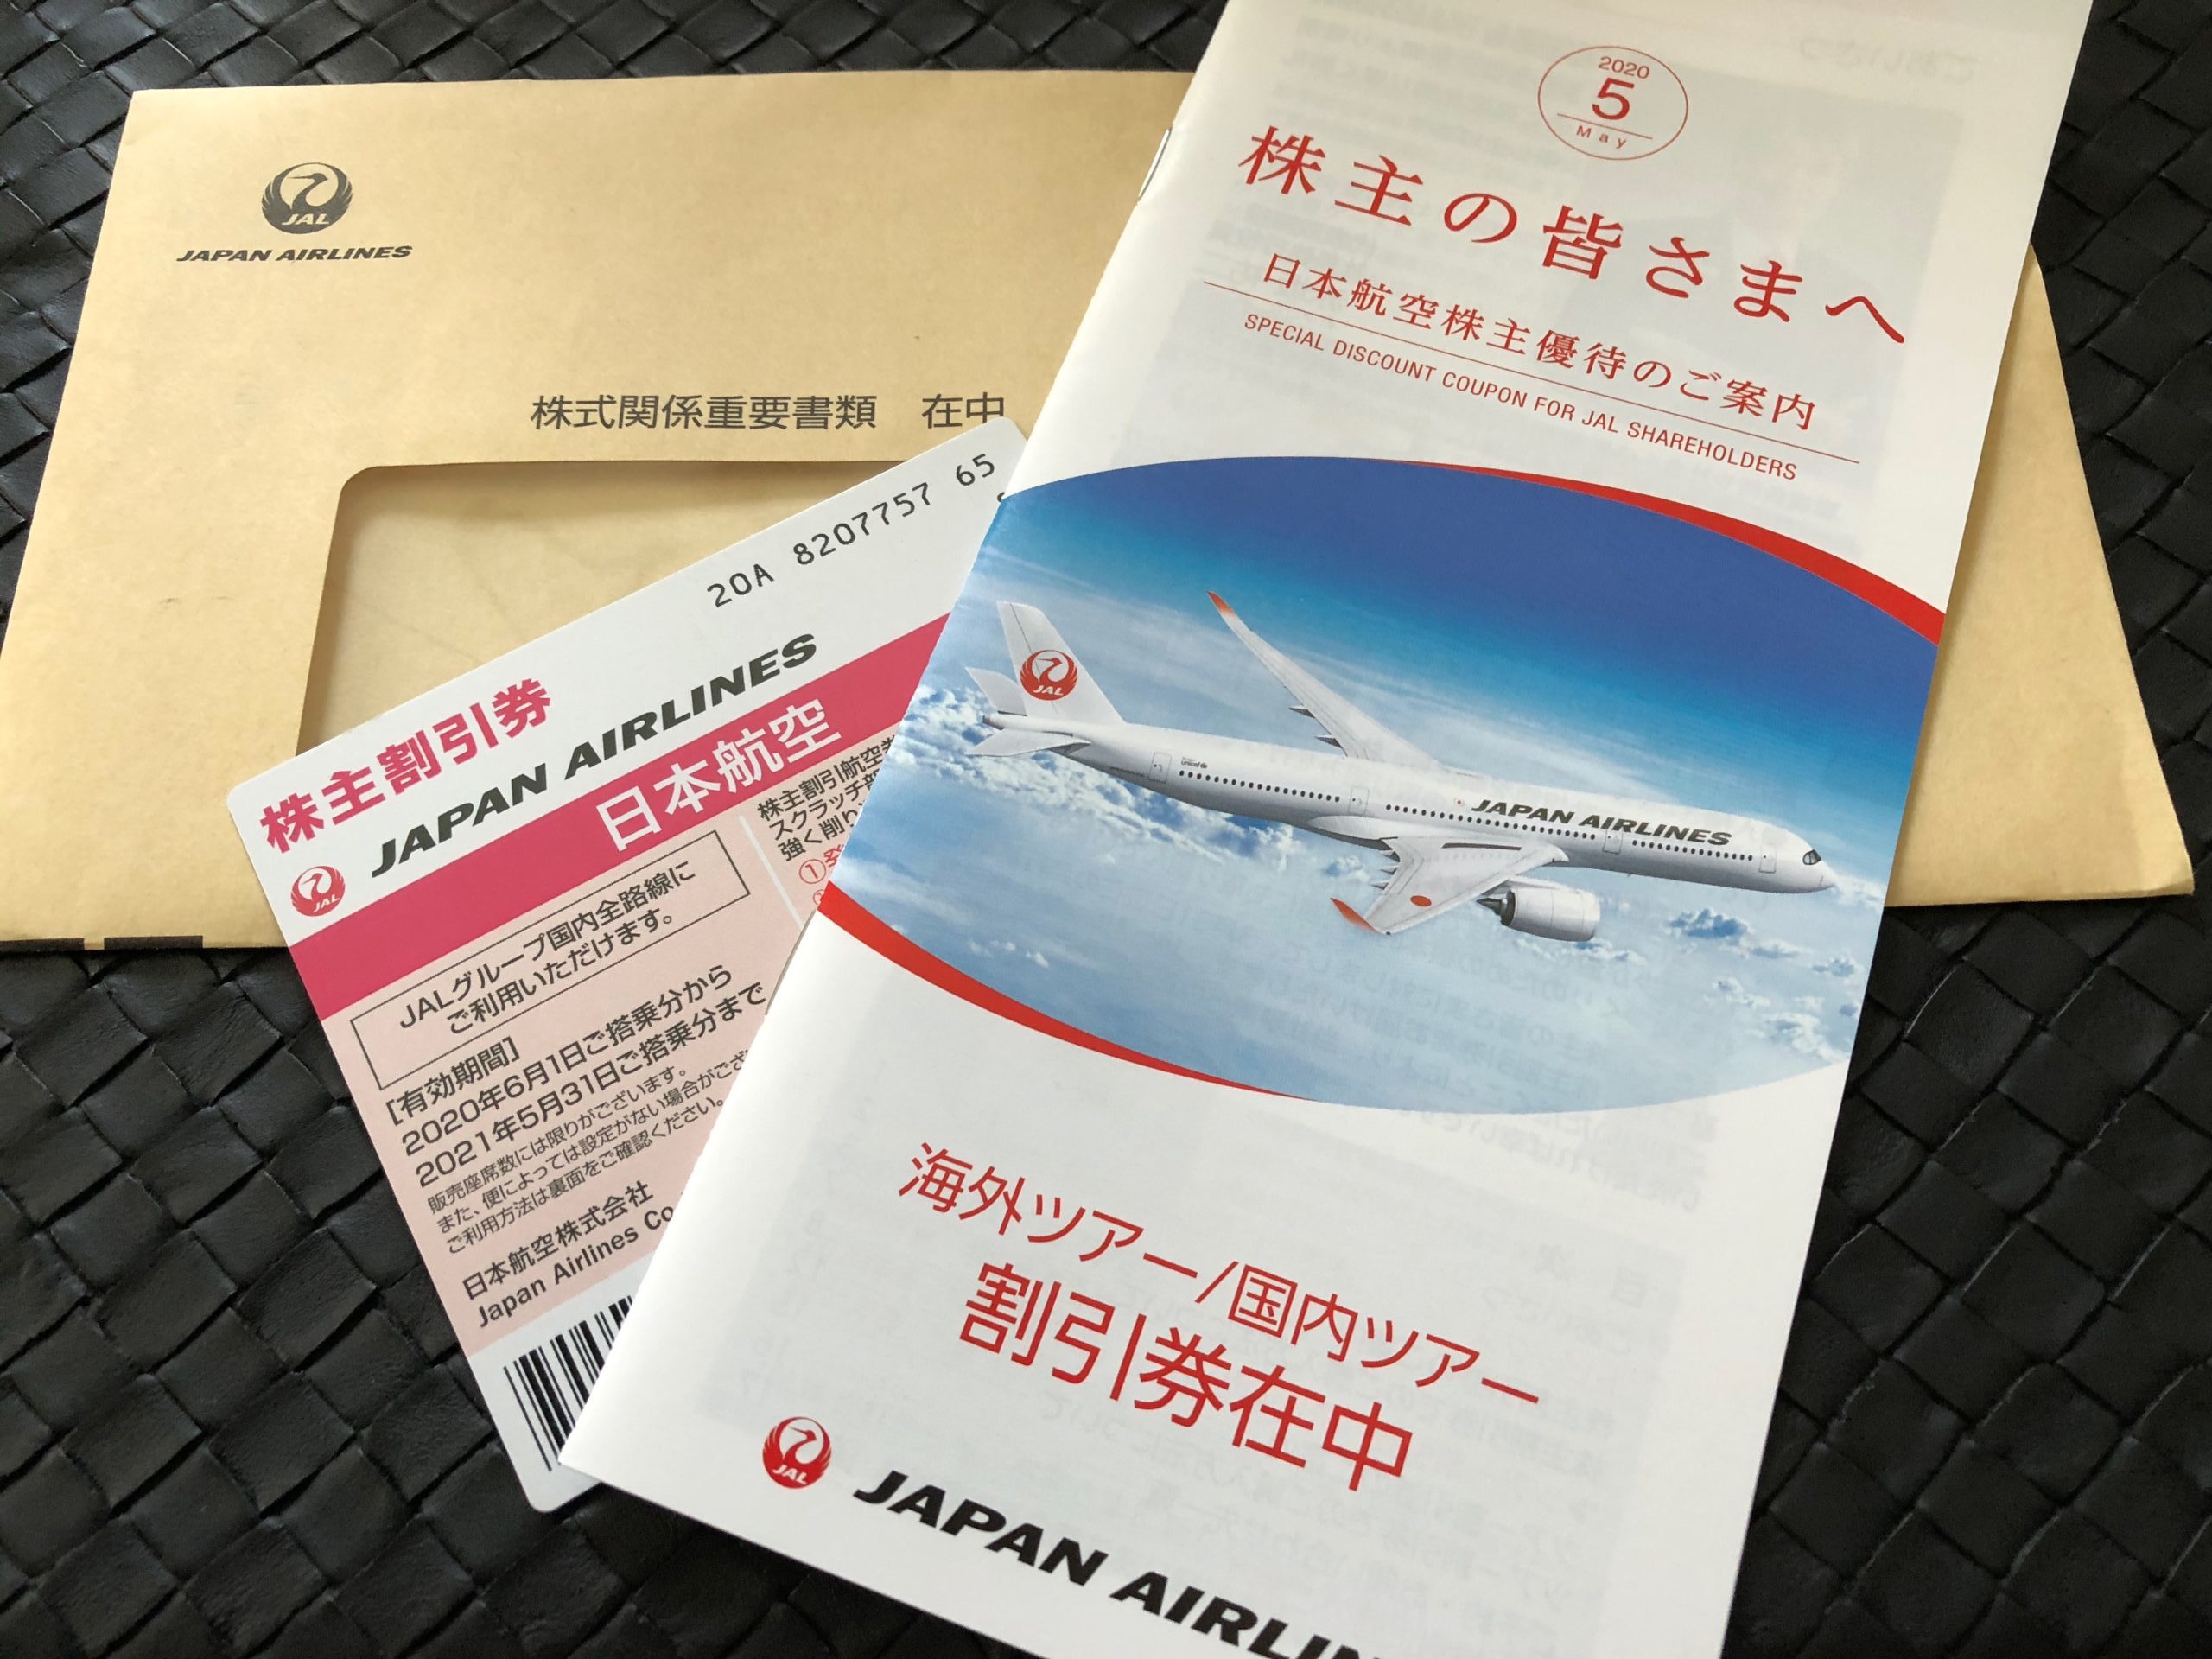 【JAL】日本航空の株主優待が届いた話 | 平凡サラリーマンのクレジットカード活用記